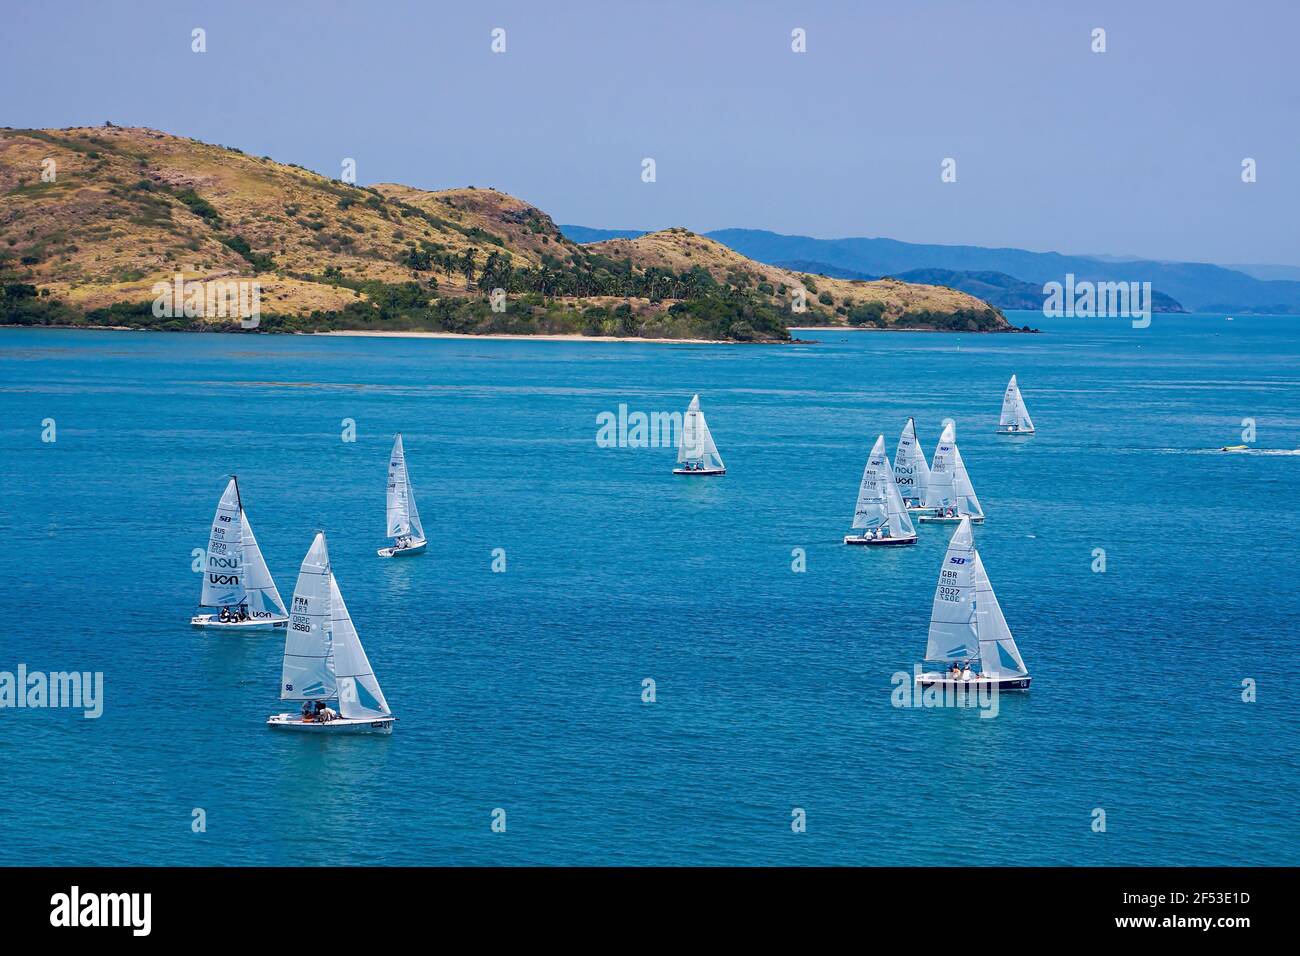 Flotte von kleinen Segelbooten, die jedes Jahr während der aufregenden Weltklasse-Rennwoche auf Hamilton Island, Queensland, Australien, Rennen. Stockfoto